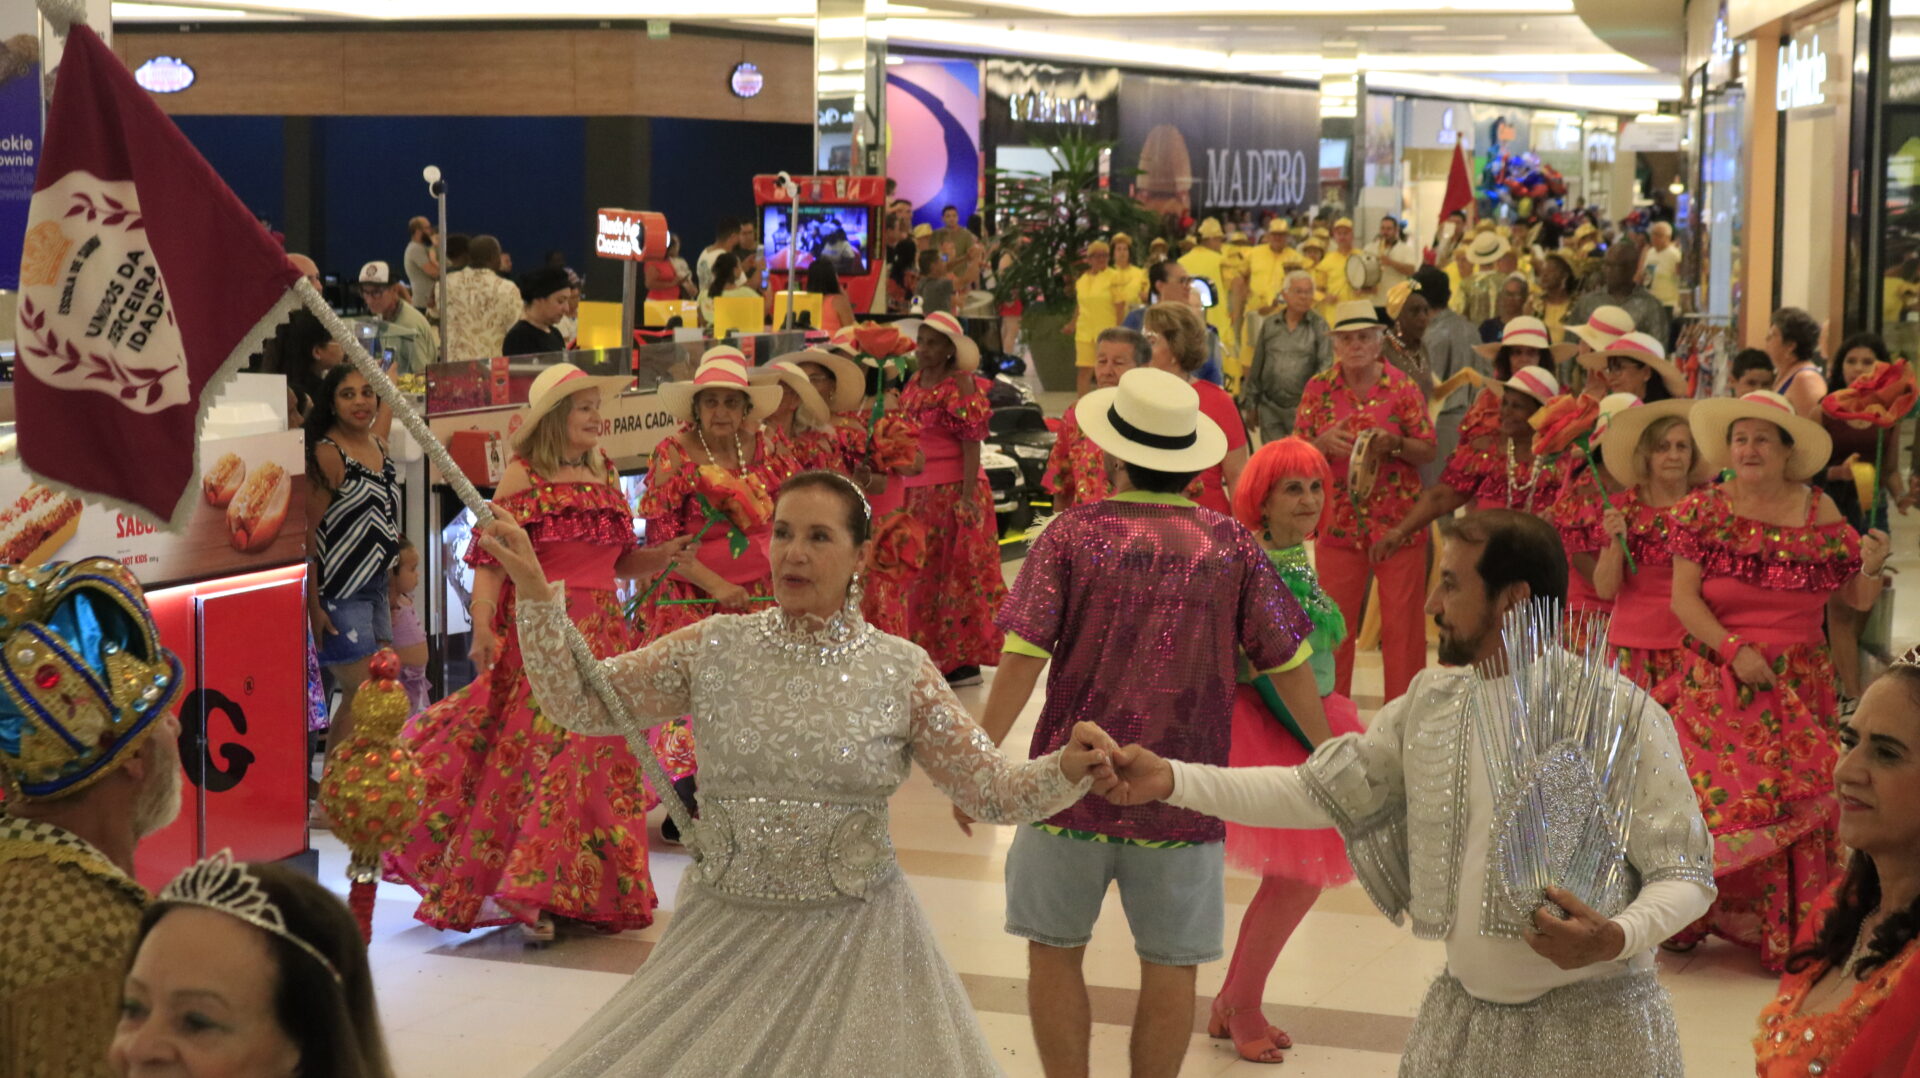 Carnaval no Limeira Shopping começa neste sábado com escola de samba, matinê e show